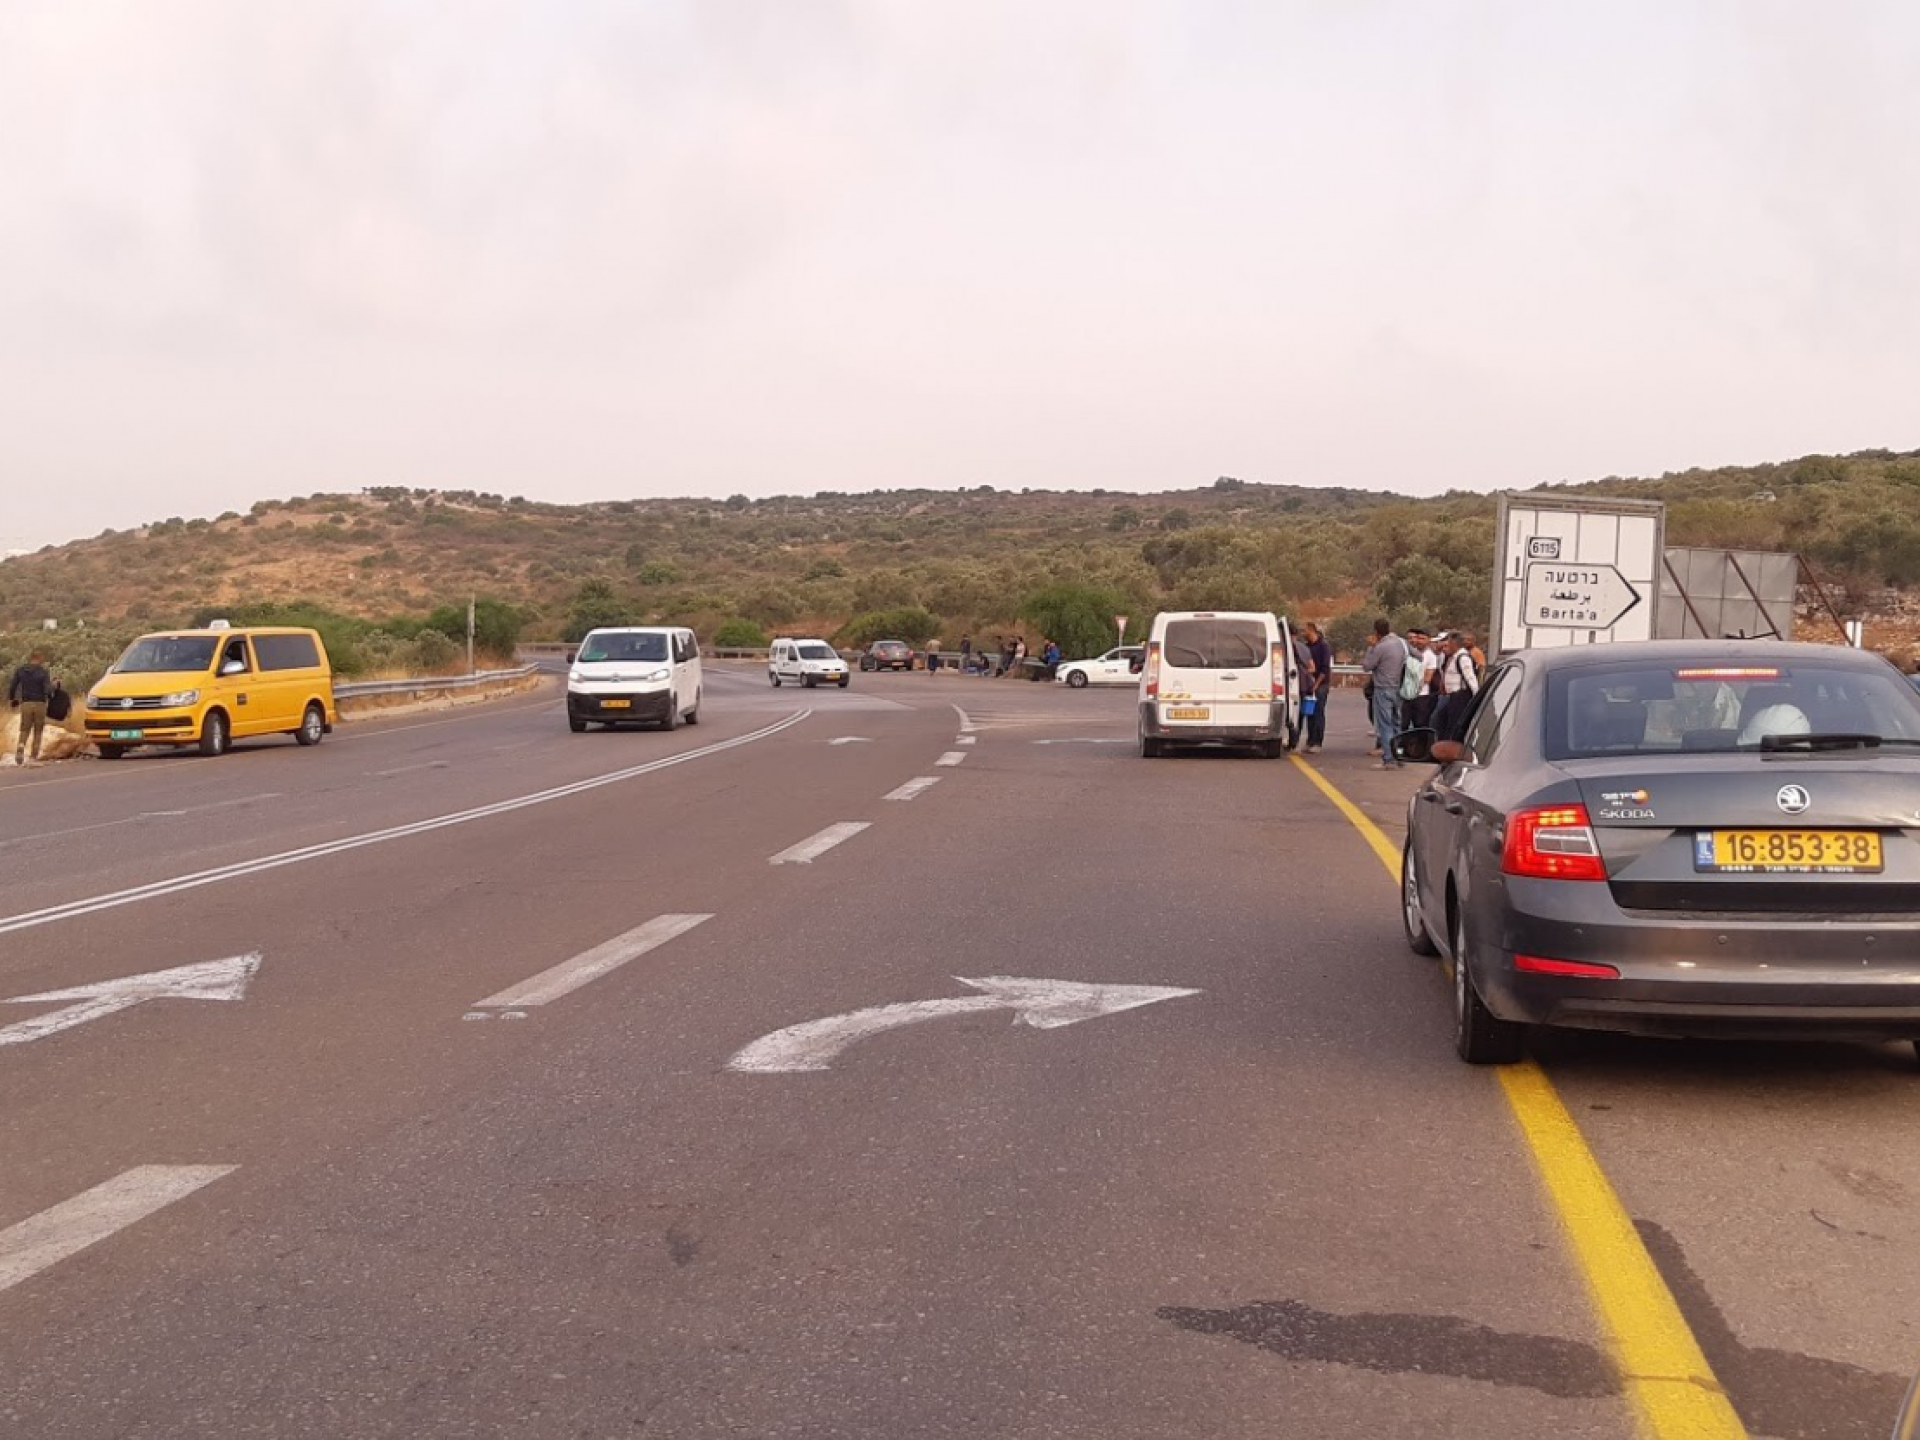 צומת ברטעה המזרחית: תחנת הסעה חופשית לישראל לבאים מהגדה דרך הגדר. אין צורך באישורים